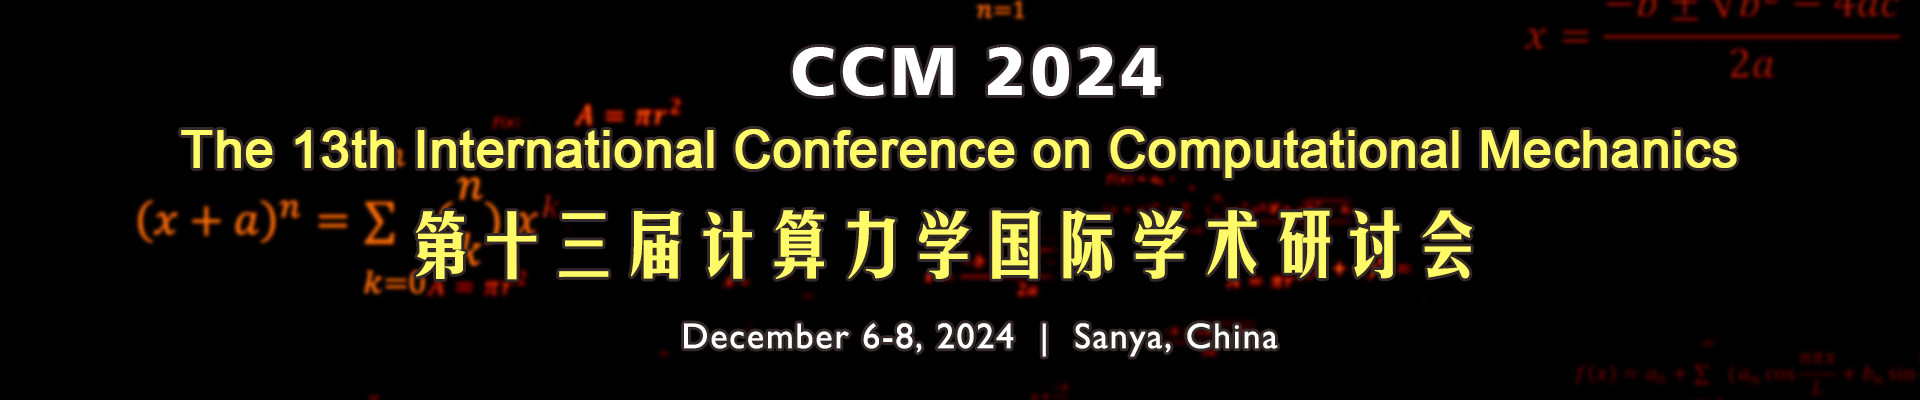 第十三届计算力学国际学术研讨会（CCM 2024）